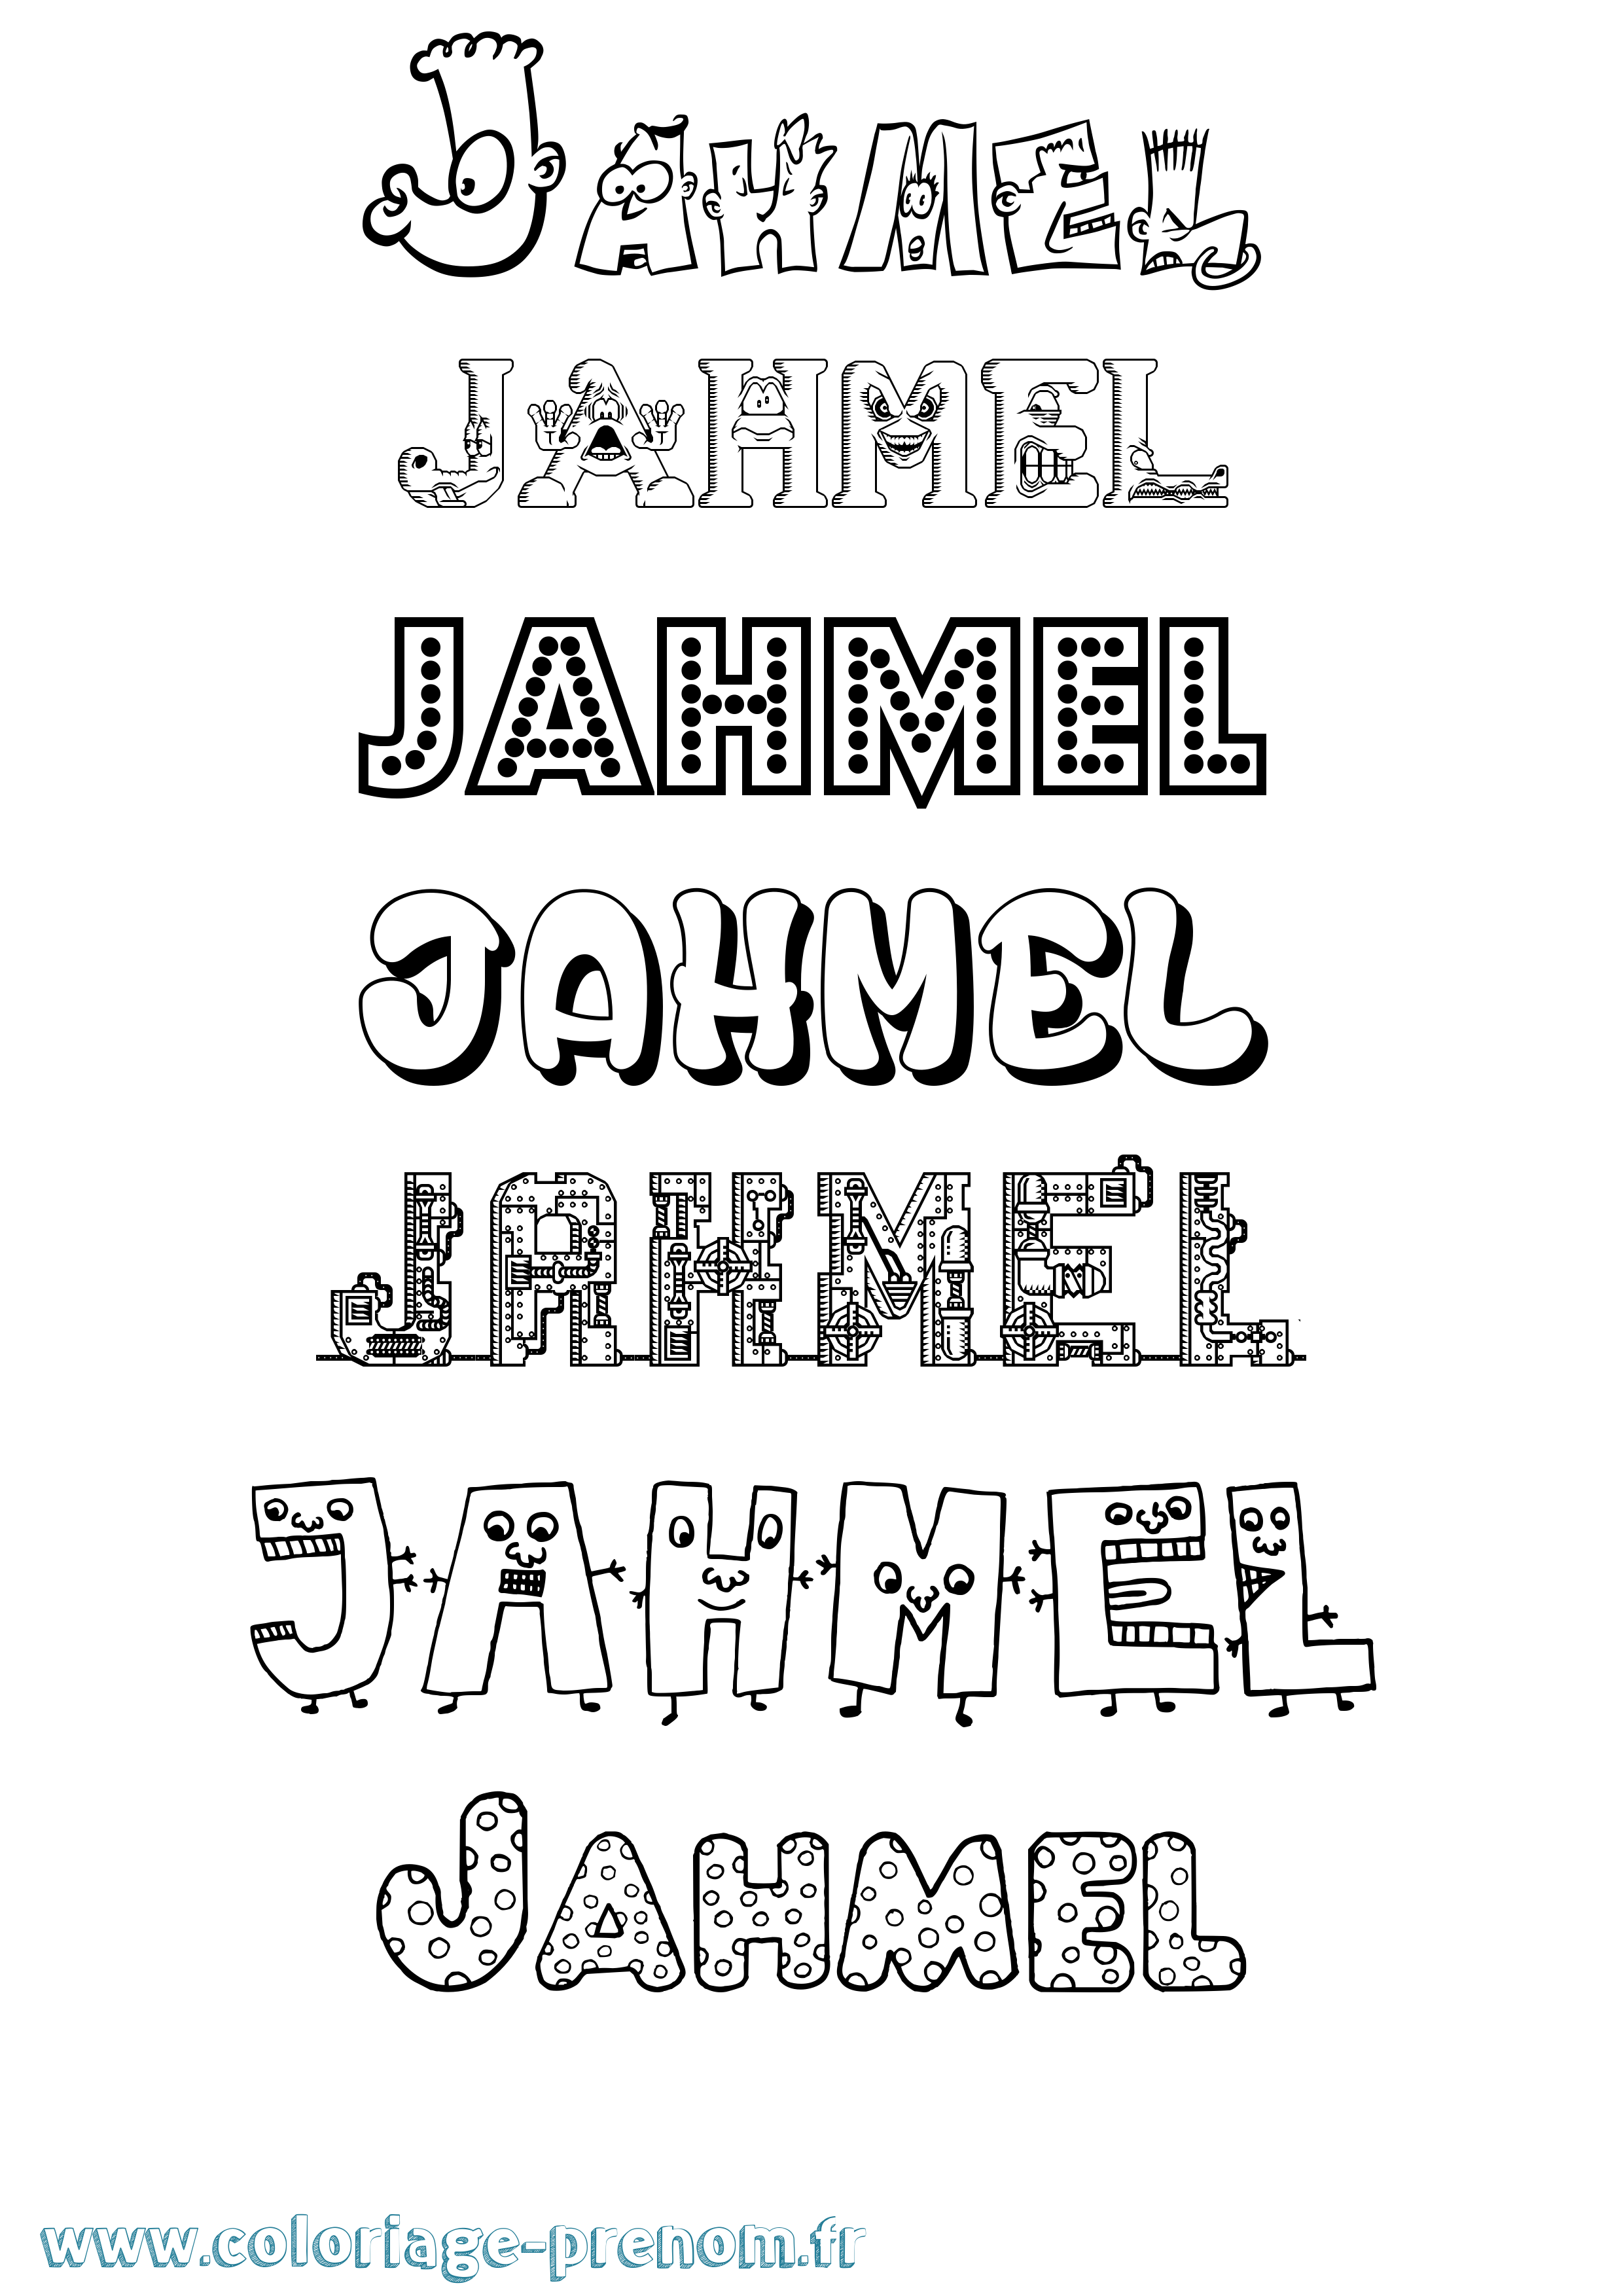 Coloriage prénom Jahmel Fun